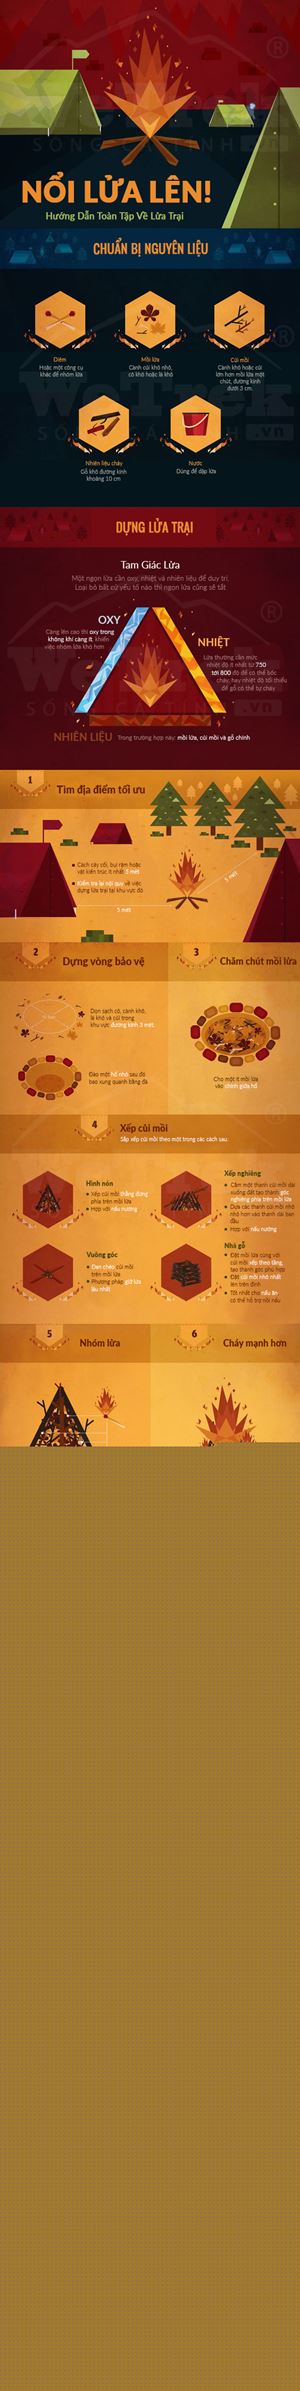 [Infographic] Hướng dẫn toàn tập về lửa trại